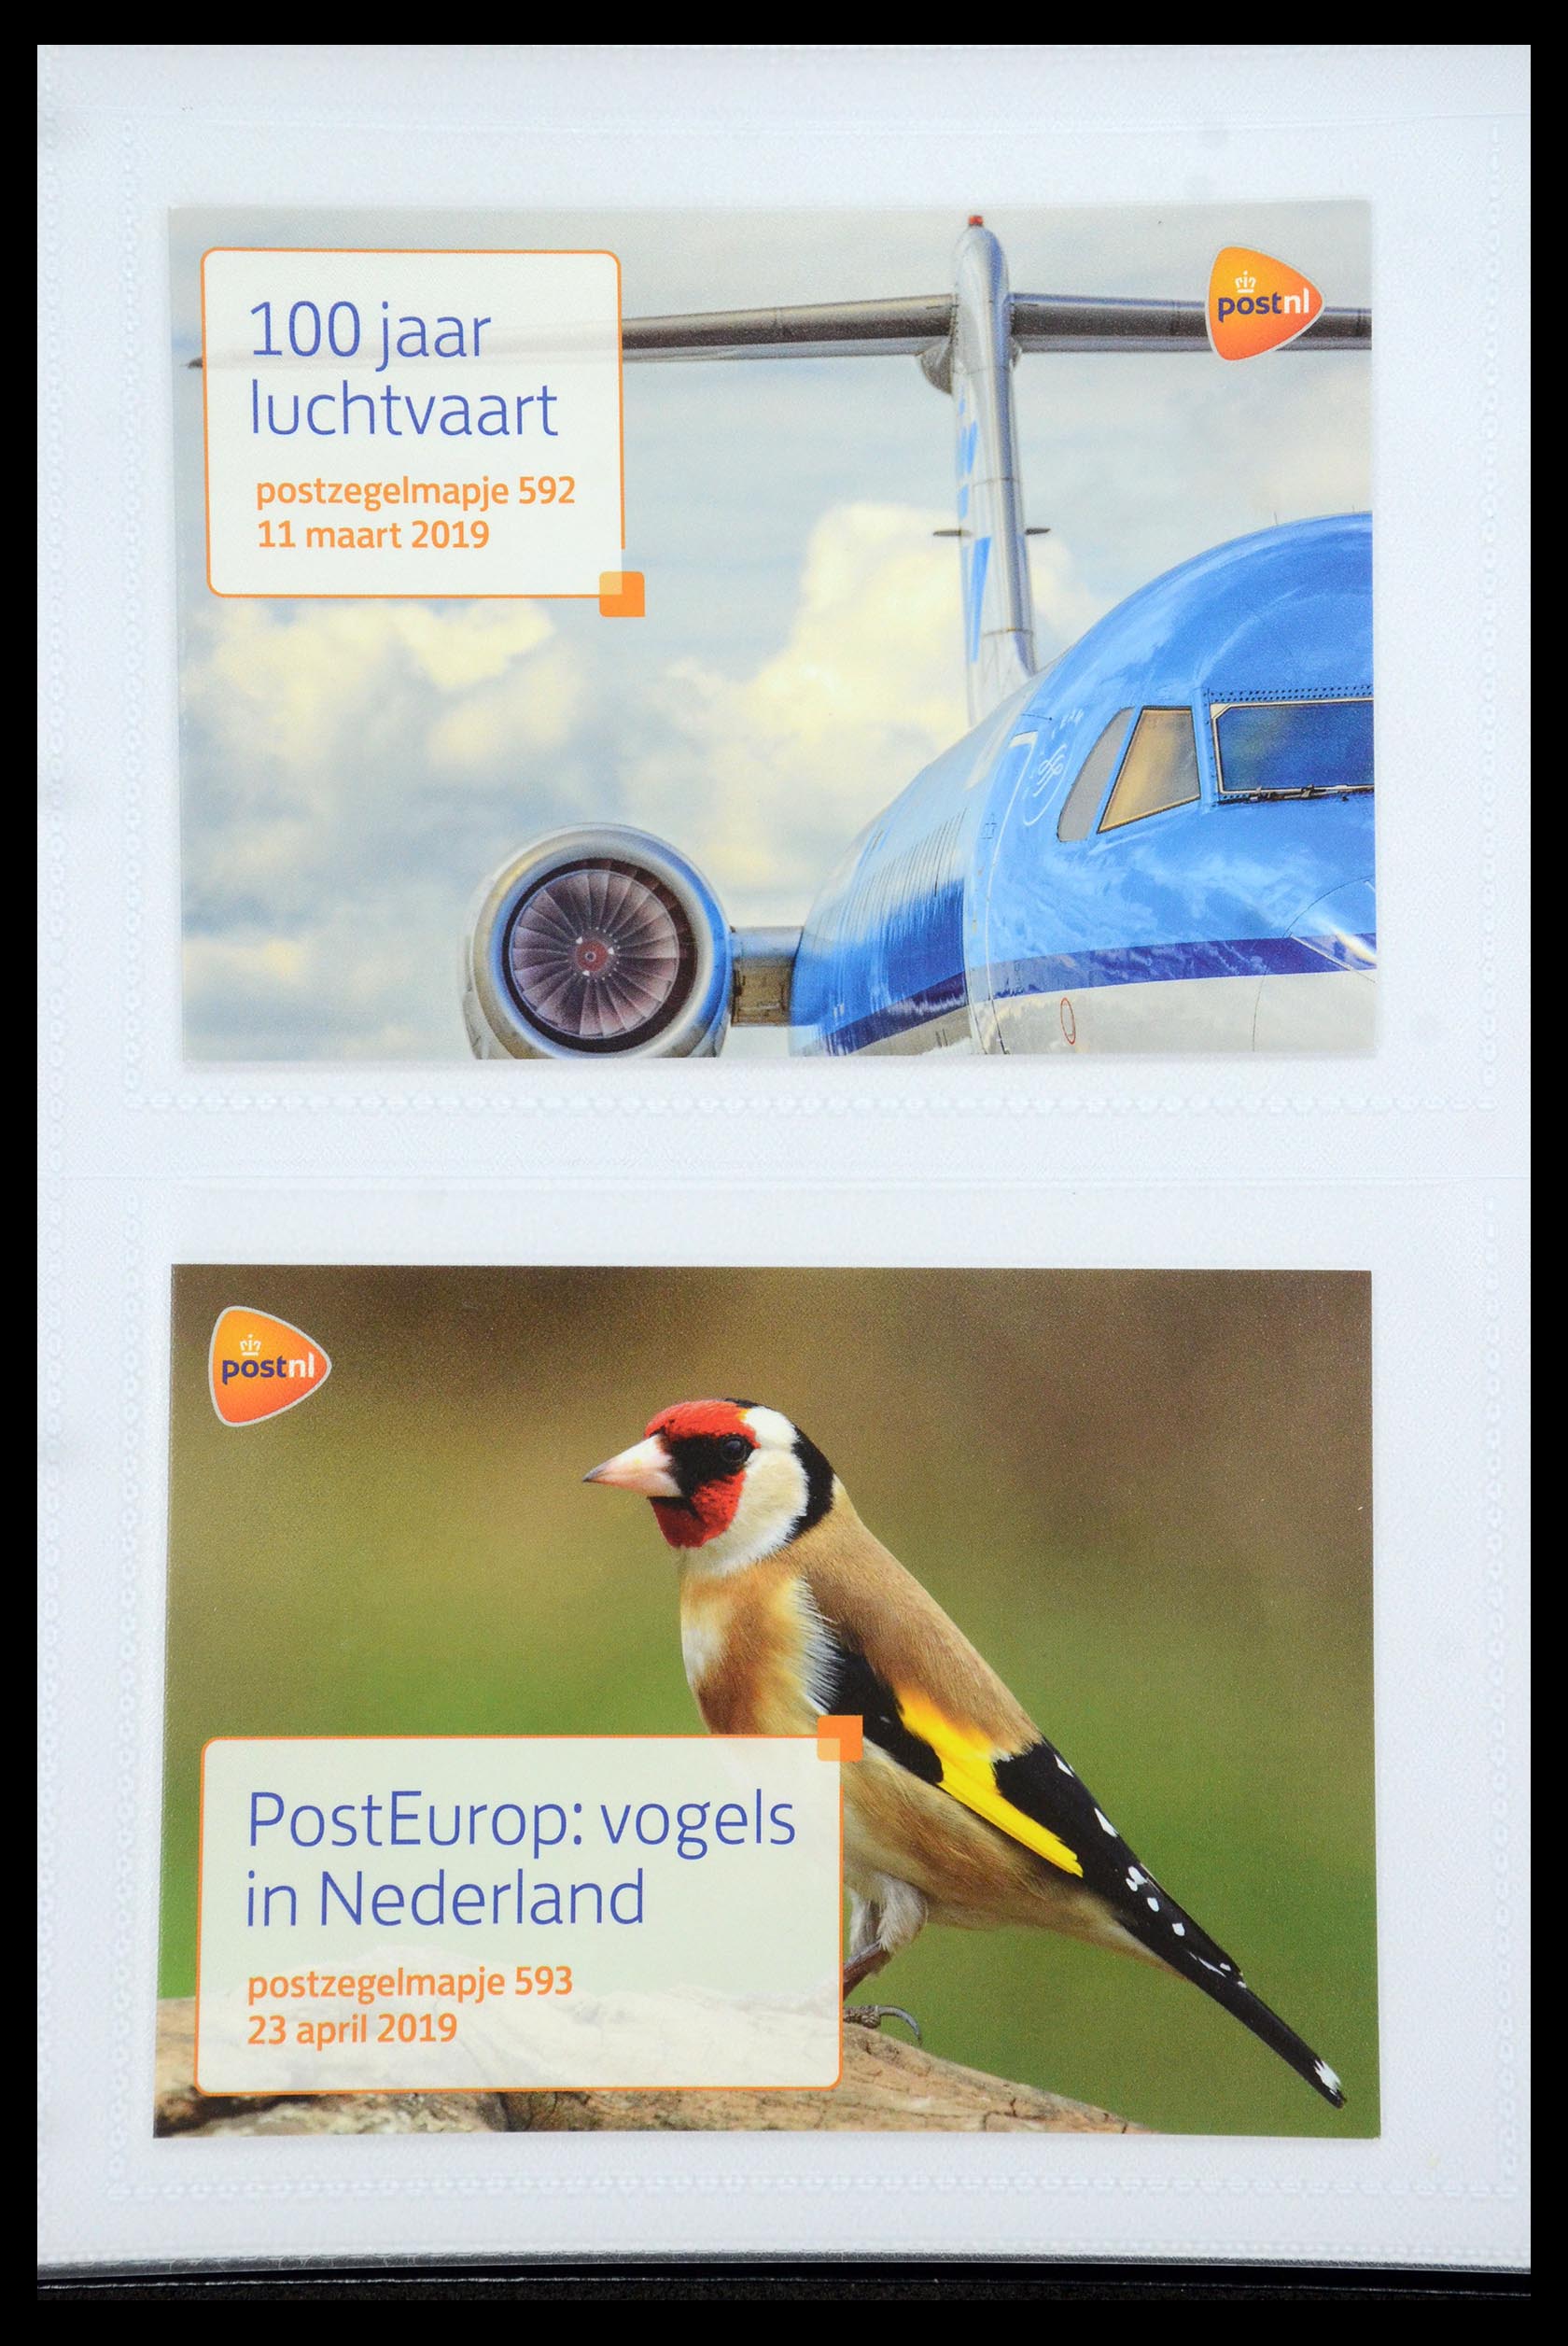 35947 358 - Stamp Collection 35947 Netherlands PTT presentation packs 1982-2019!